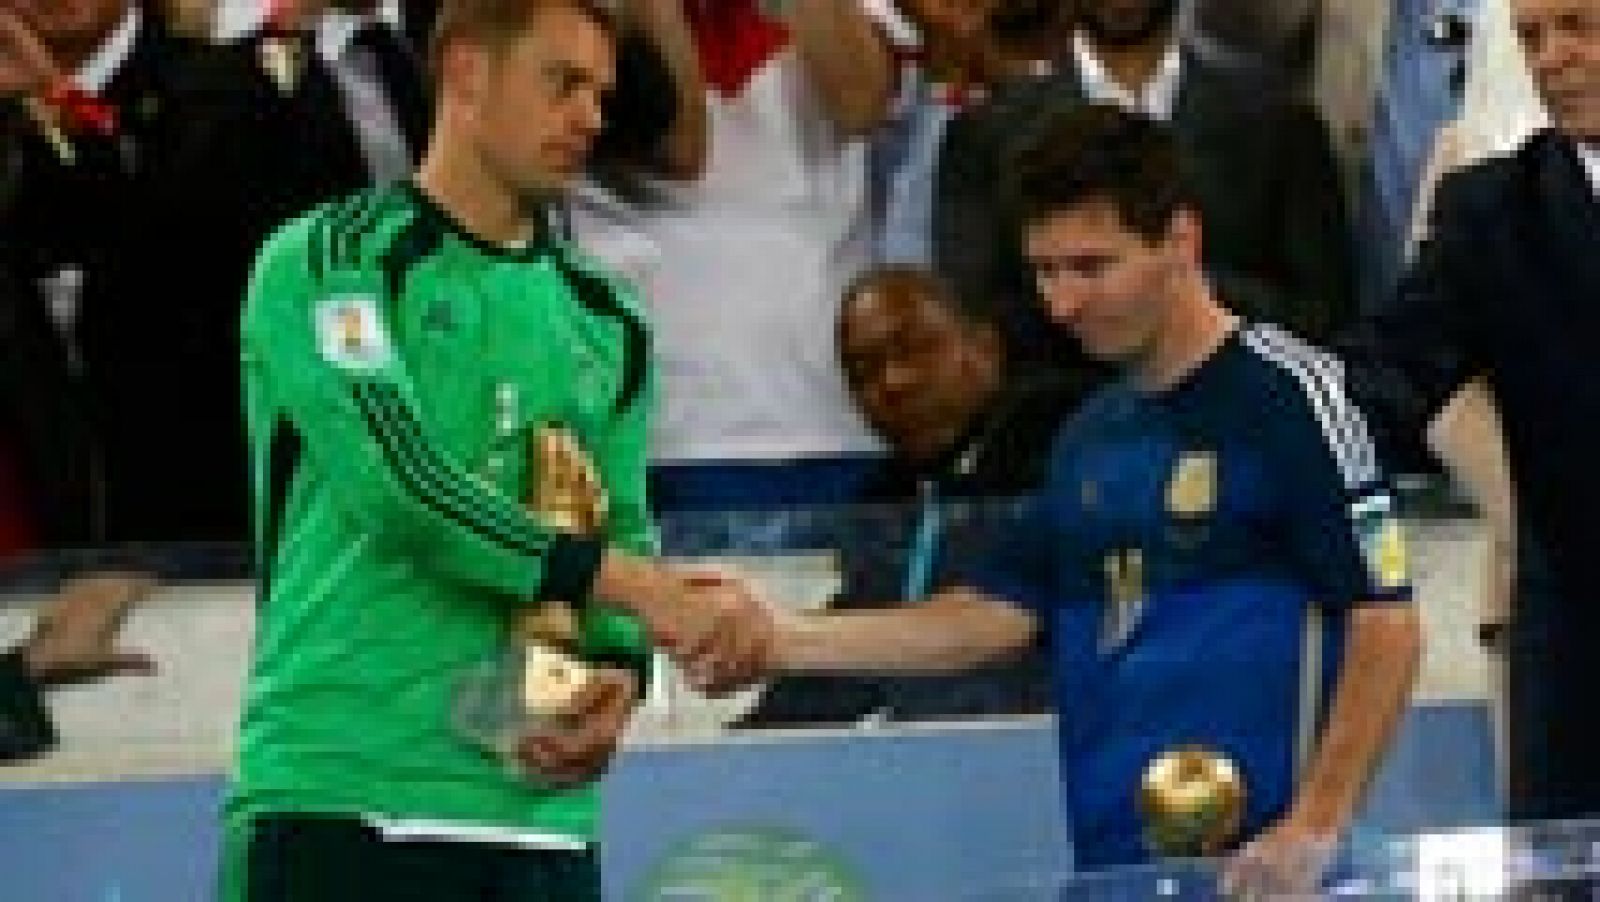 El jugador argentino volvió a pasar desapercibido en la final del Mundial ante Alemania y volvió a vomitar. Nadie tiene la respuesta para el bajón del jugador, que ha realizado su peor temporada como profesional.